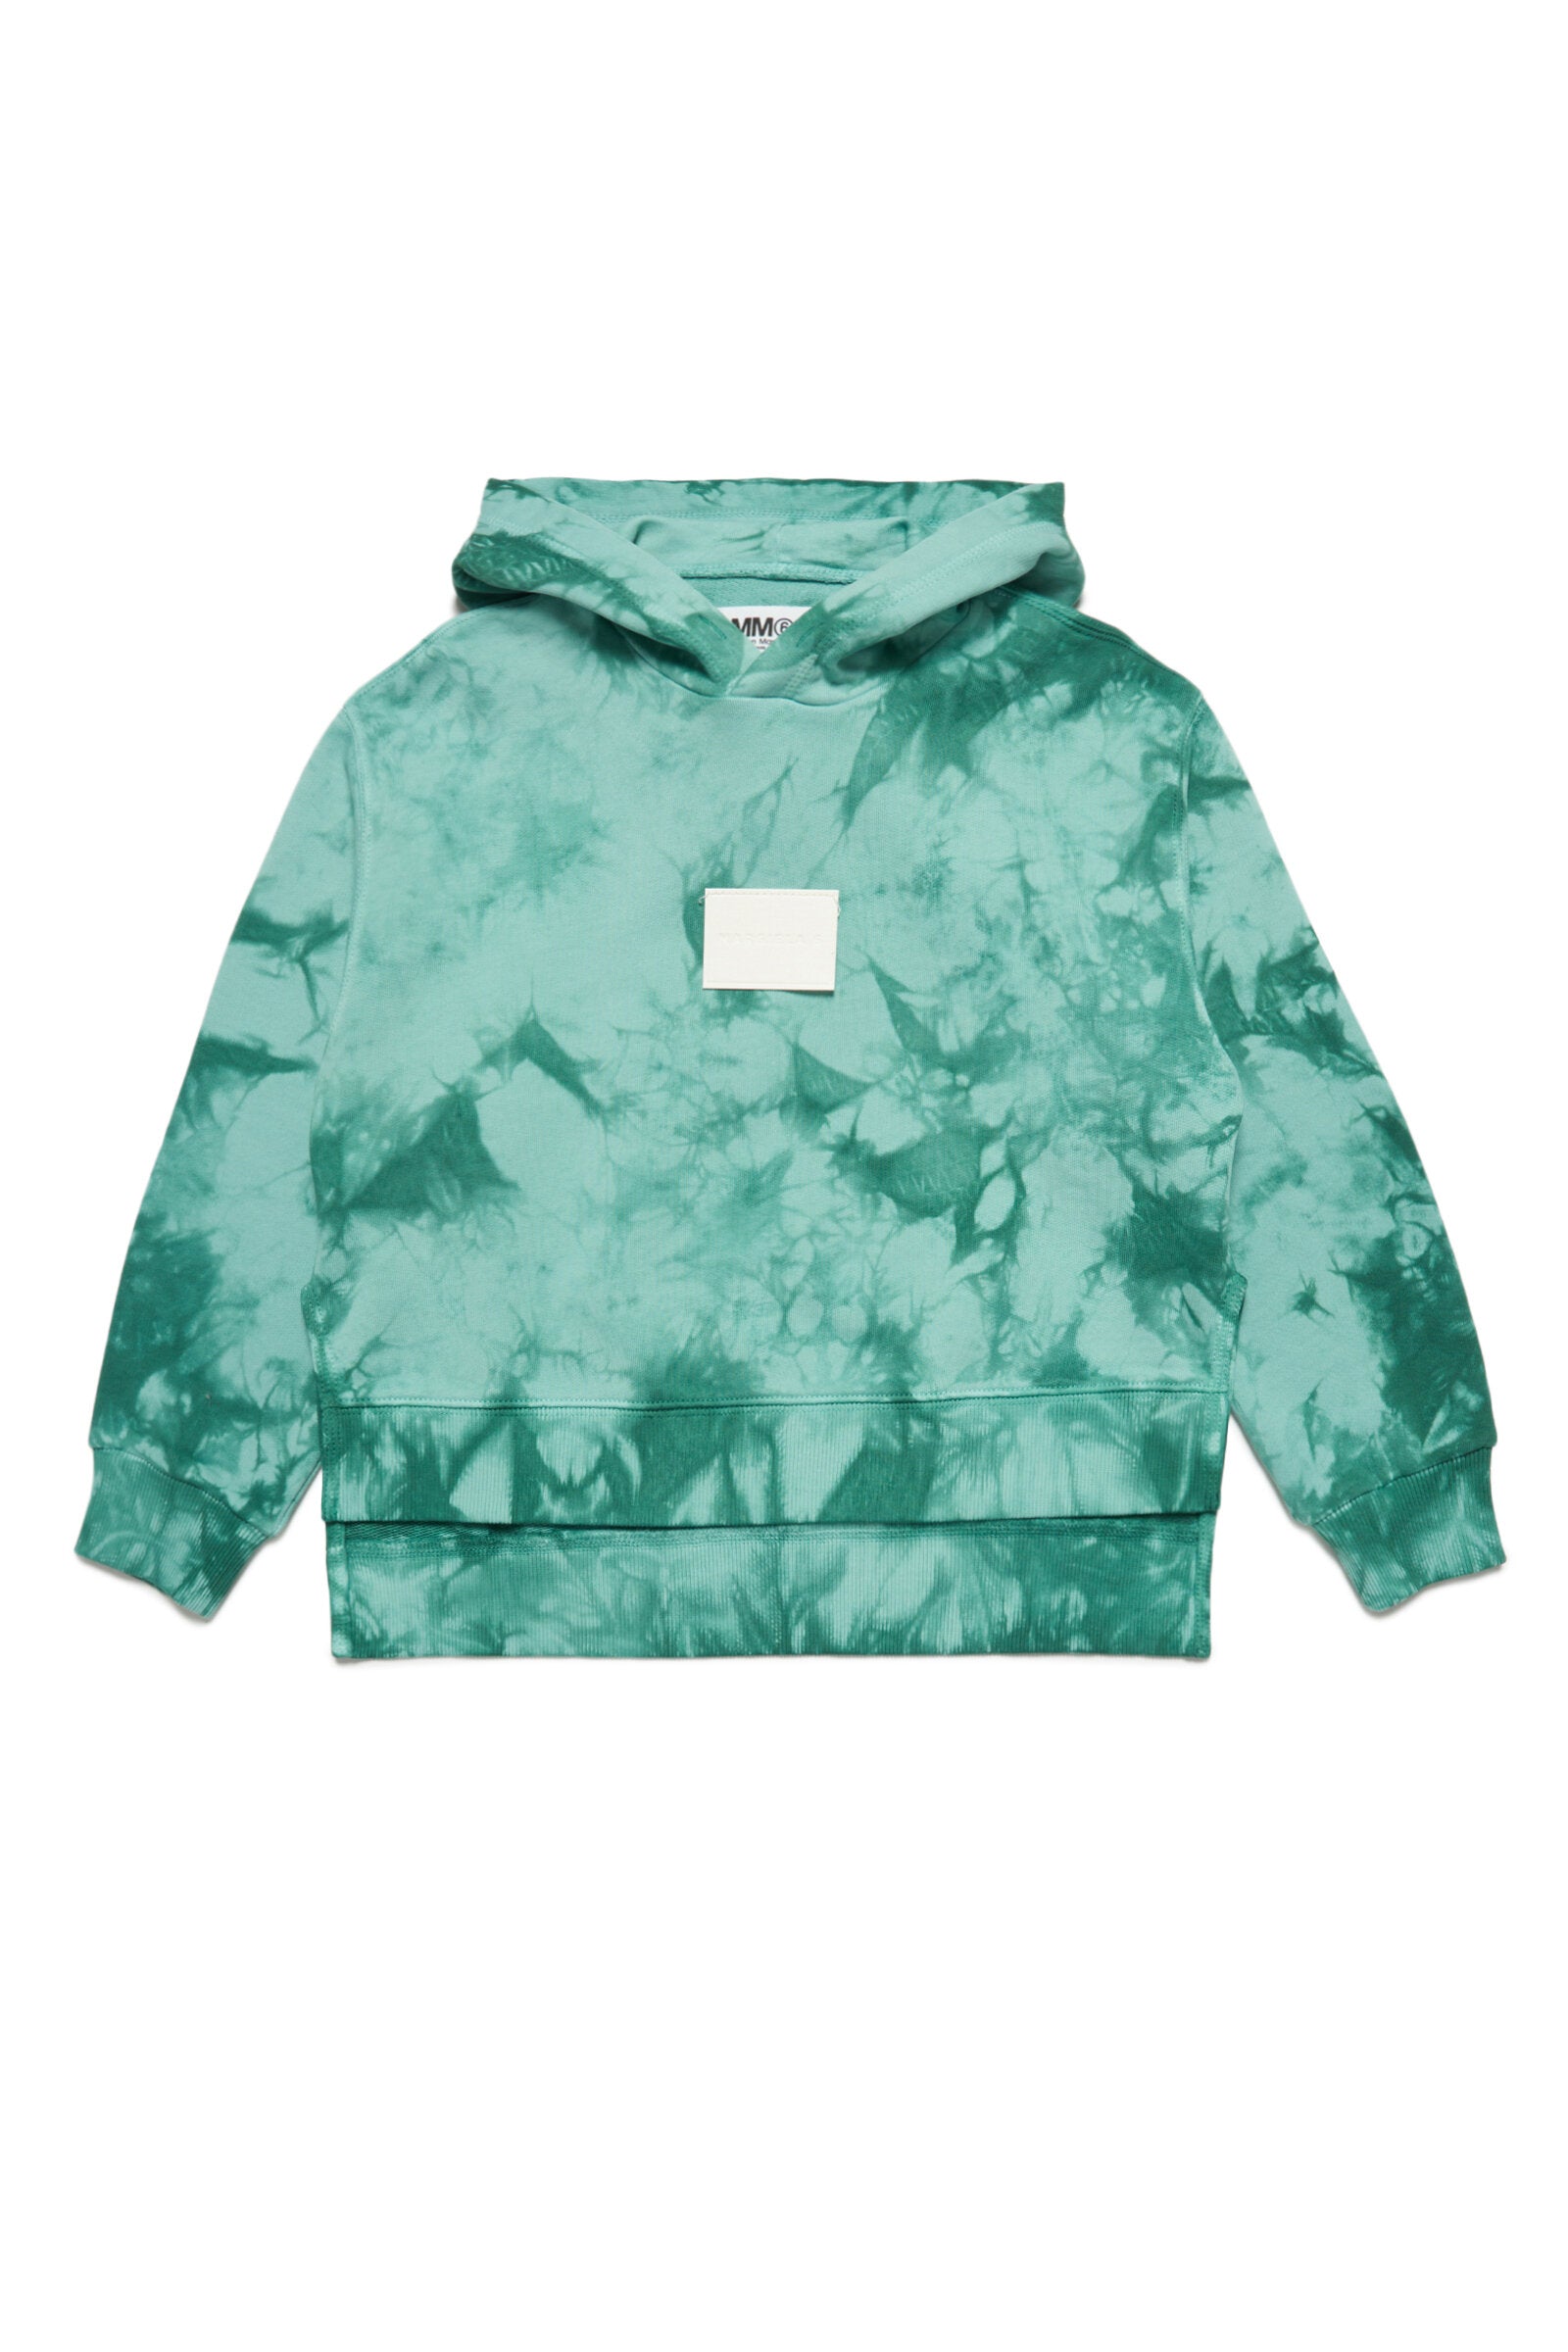 Green tie-dye effect hooded sweatshirt